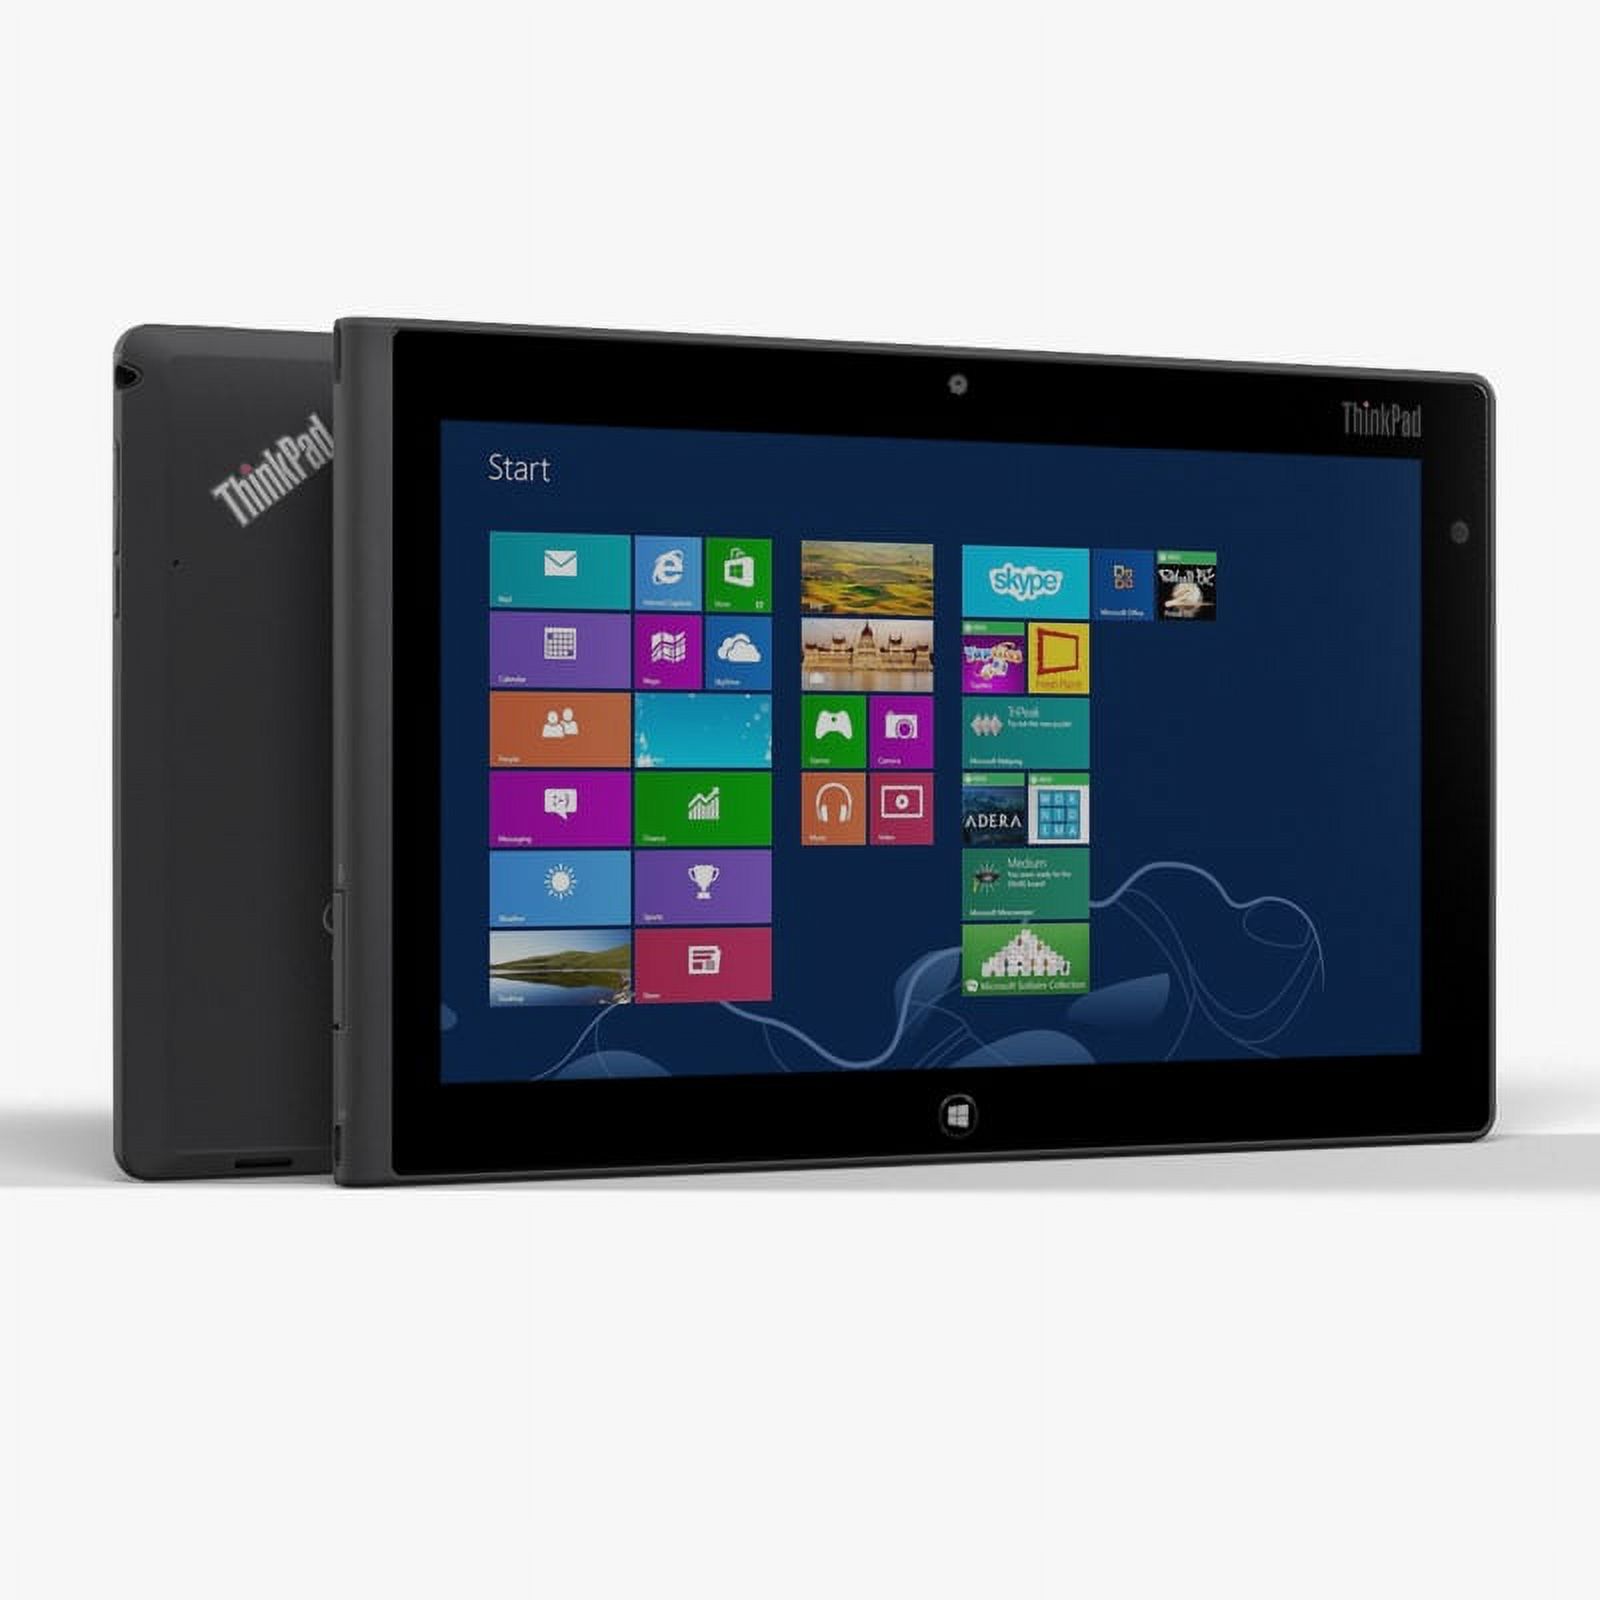 Lenovo ThinkPad Tablet 10 2G 64 GB Windows Tablet - USED - image 1 of 1